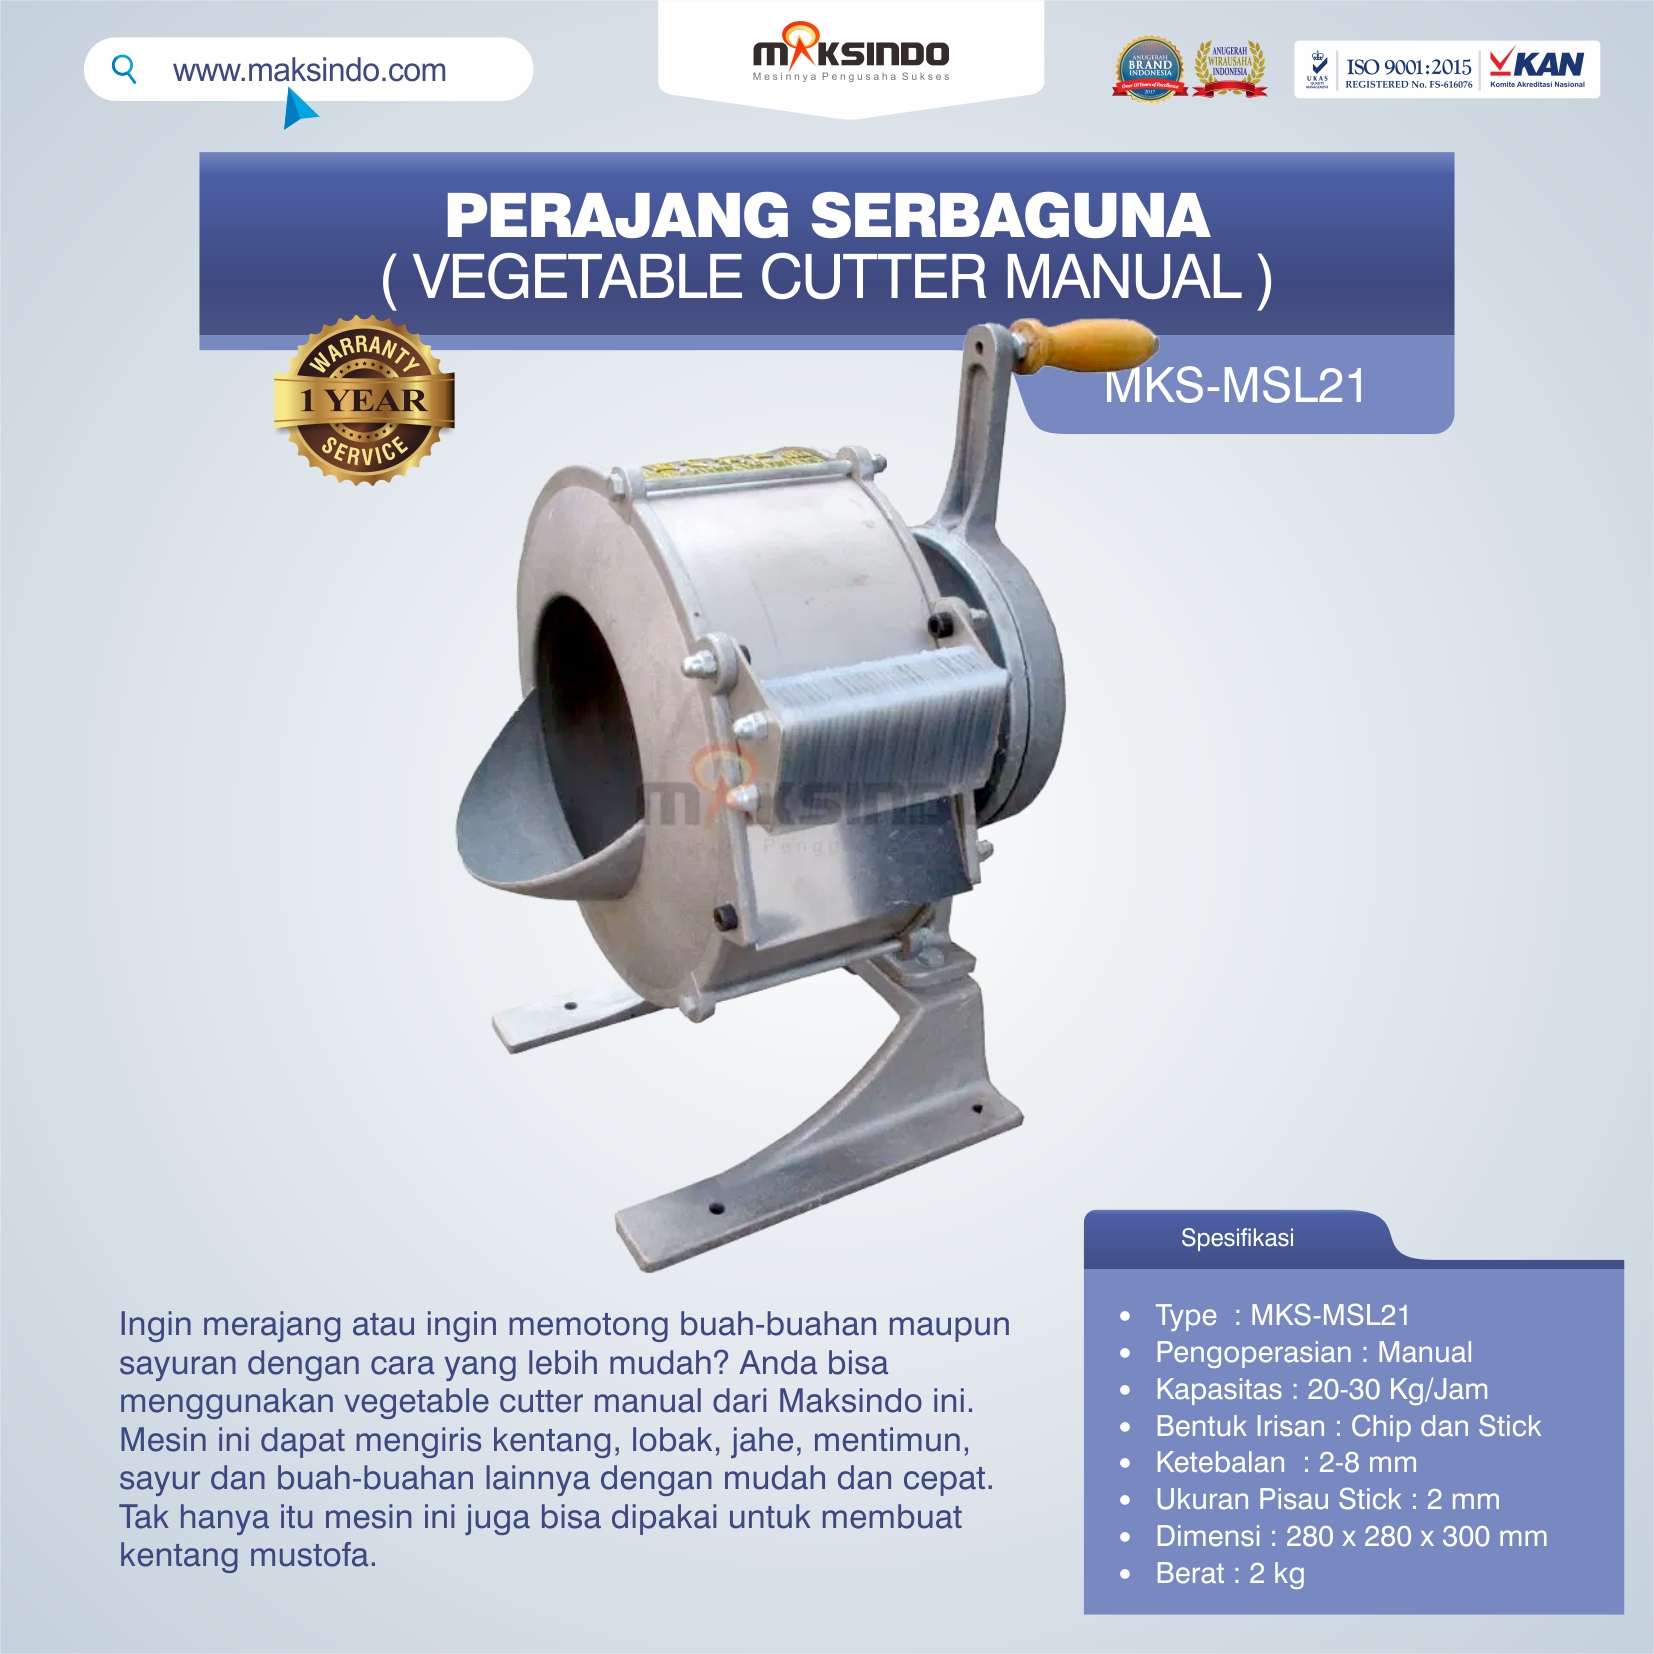 Jual Vegetable Cutter Manual MKS-MSL21 Di Banjarmasin